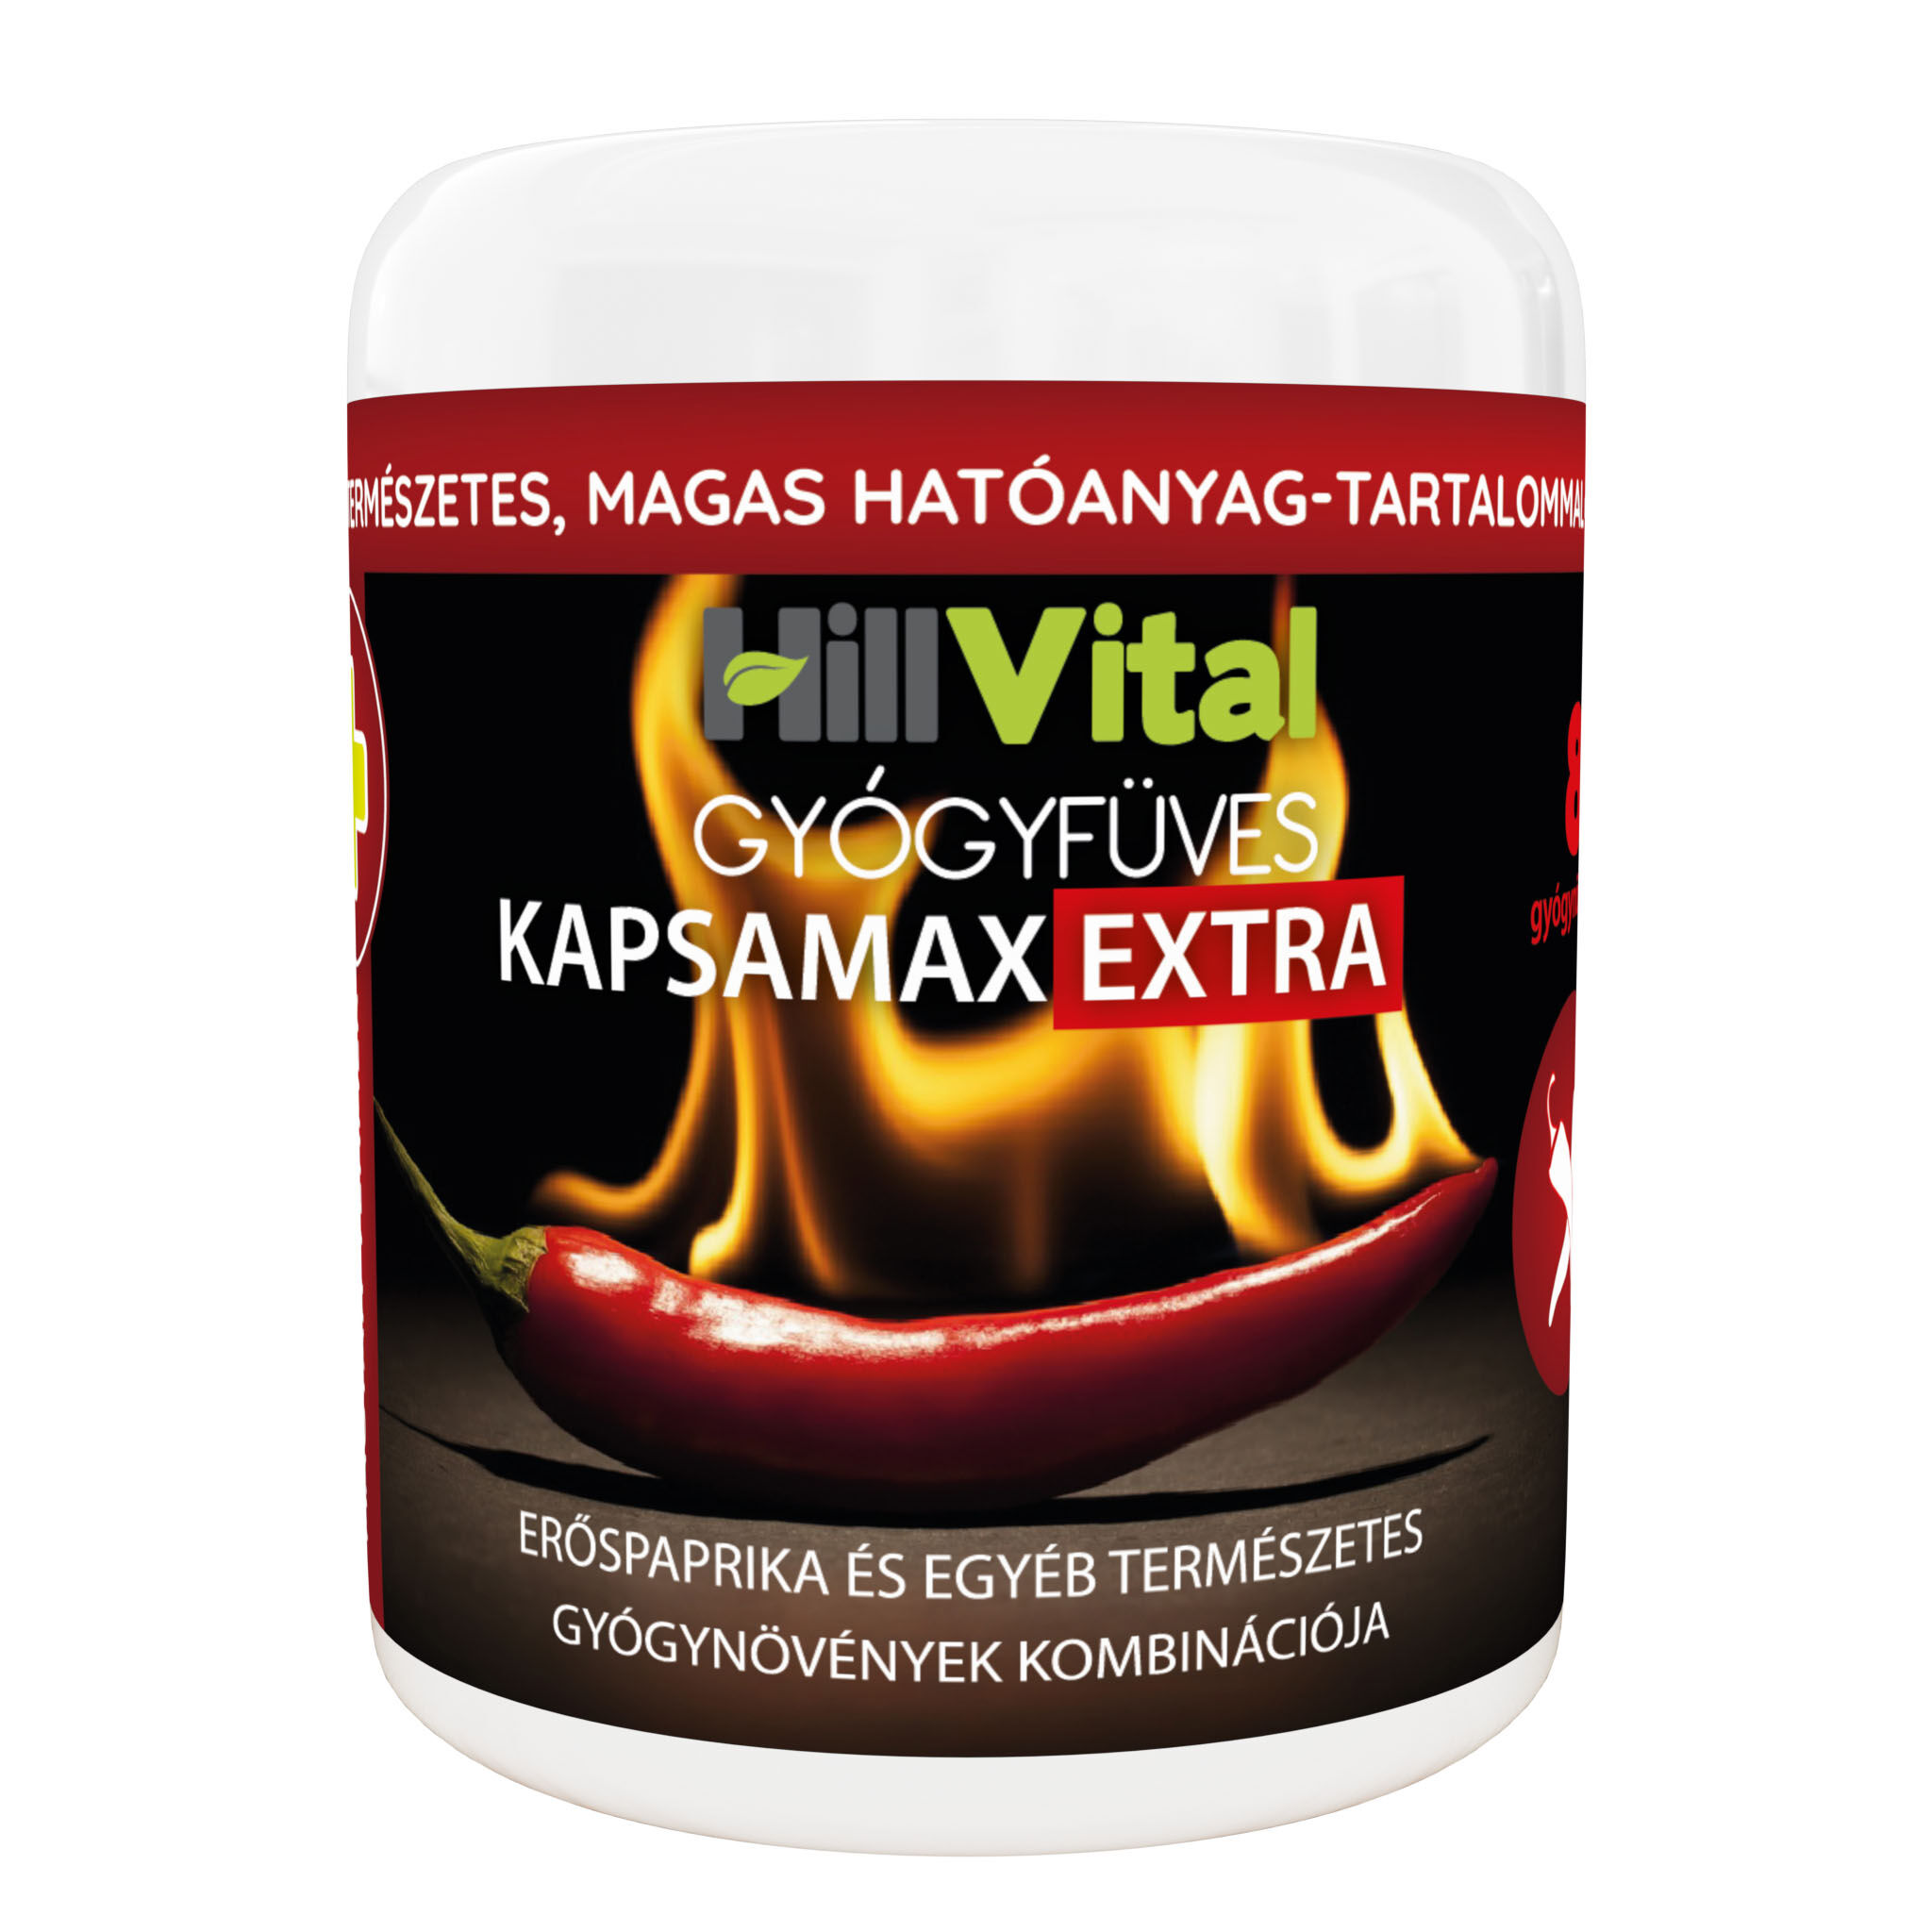 Kapsamax Extra vélemény